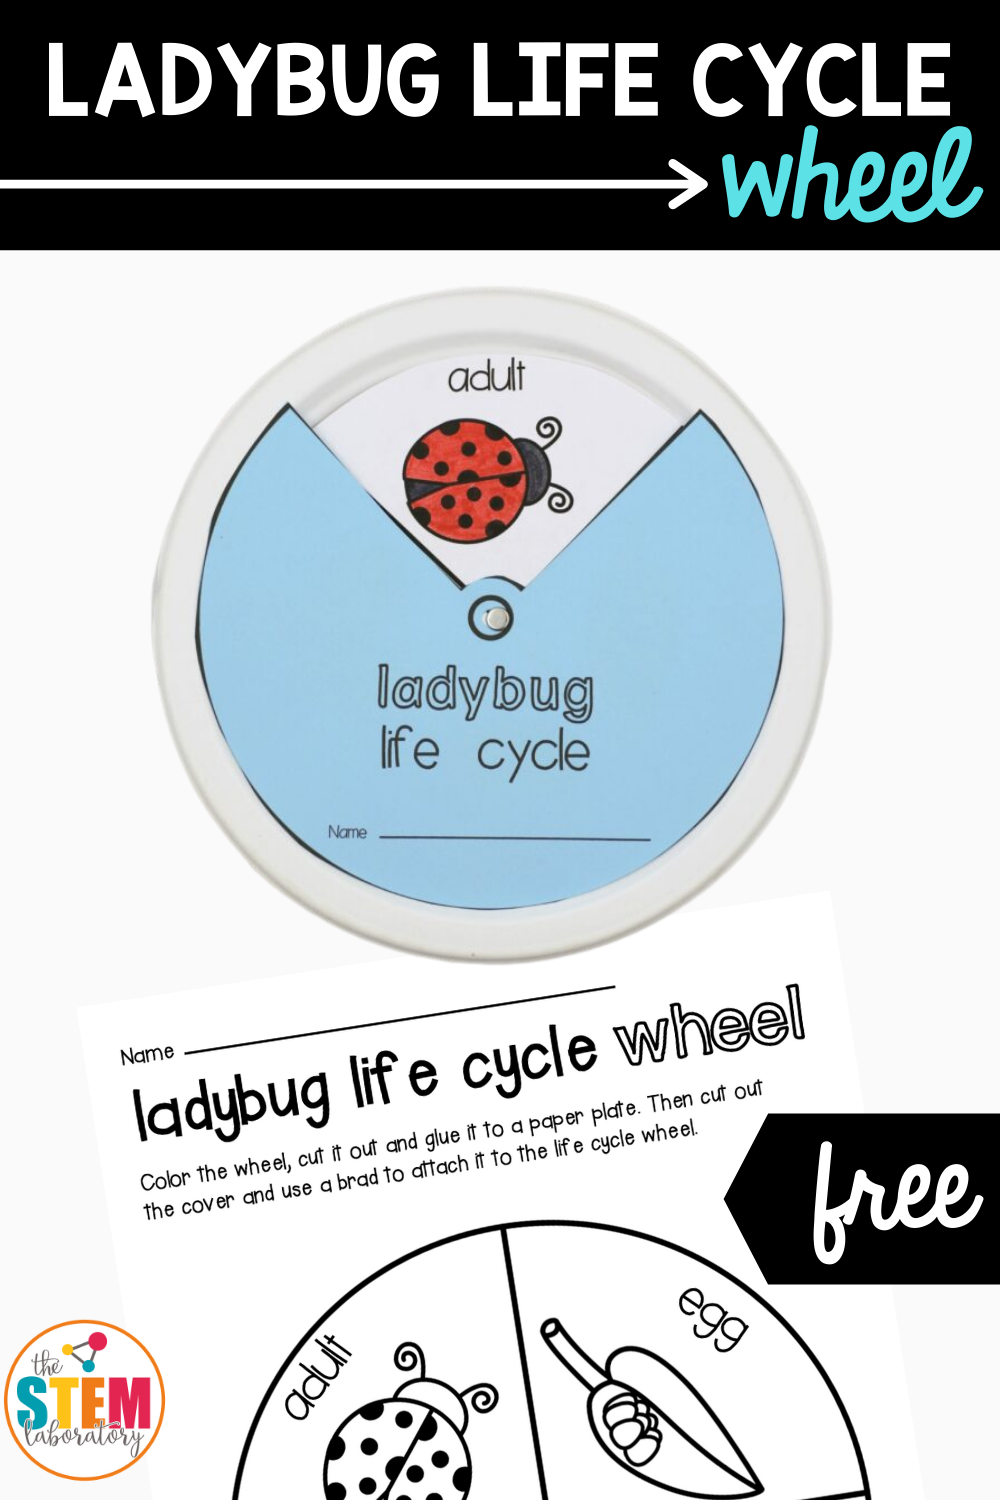 Details about   STEM-Approved Ladybug Growth Stages Observation Habitat Kit for Kids Ages 4 & Up 